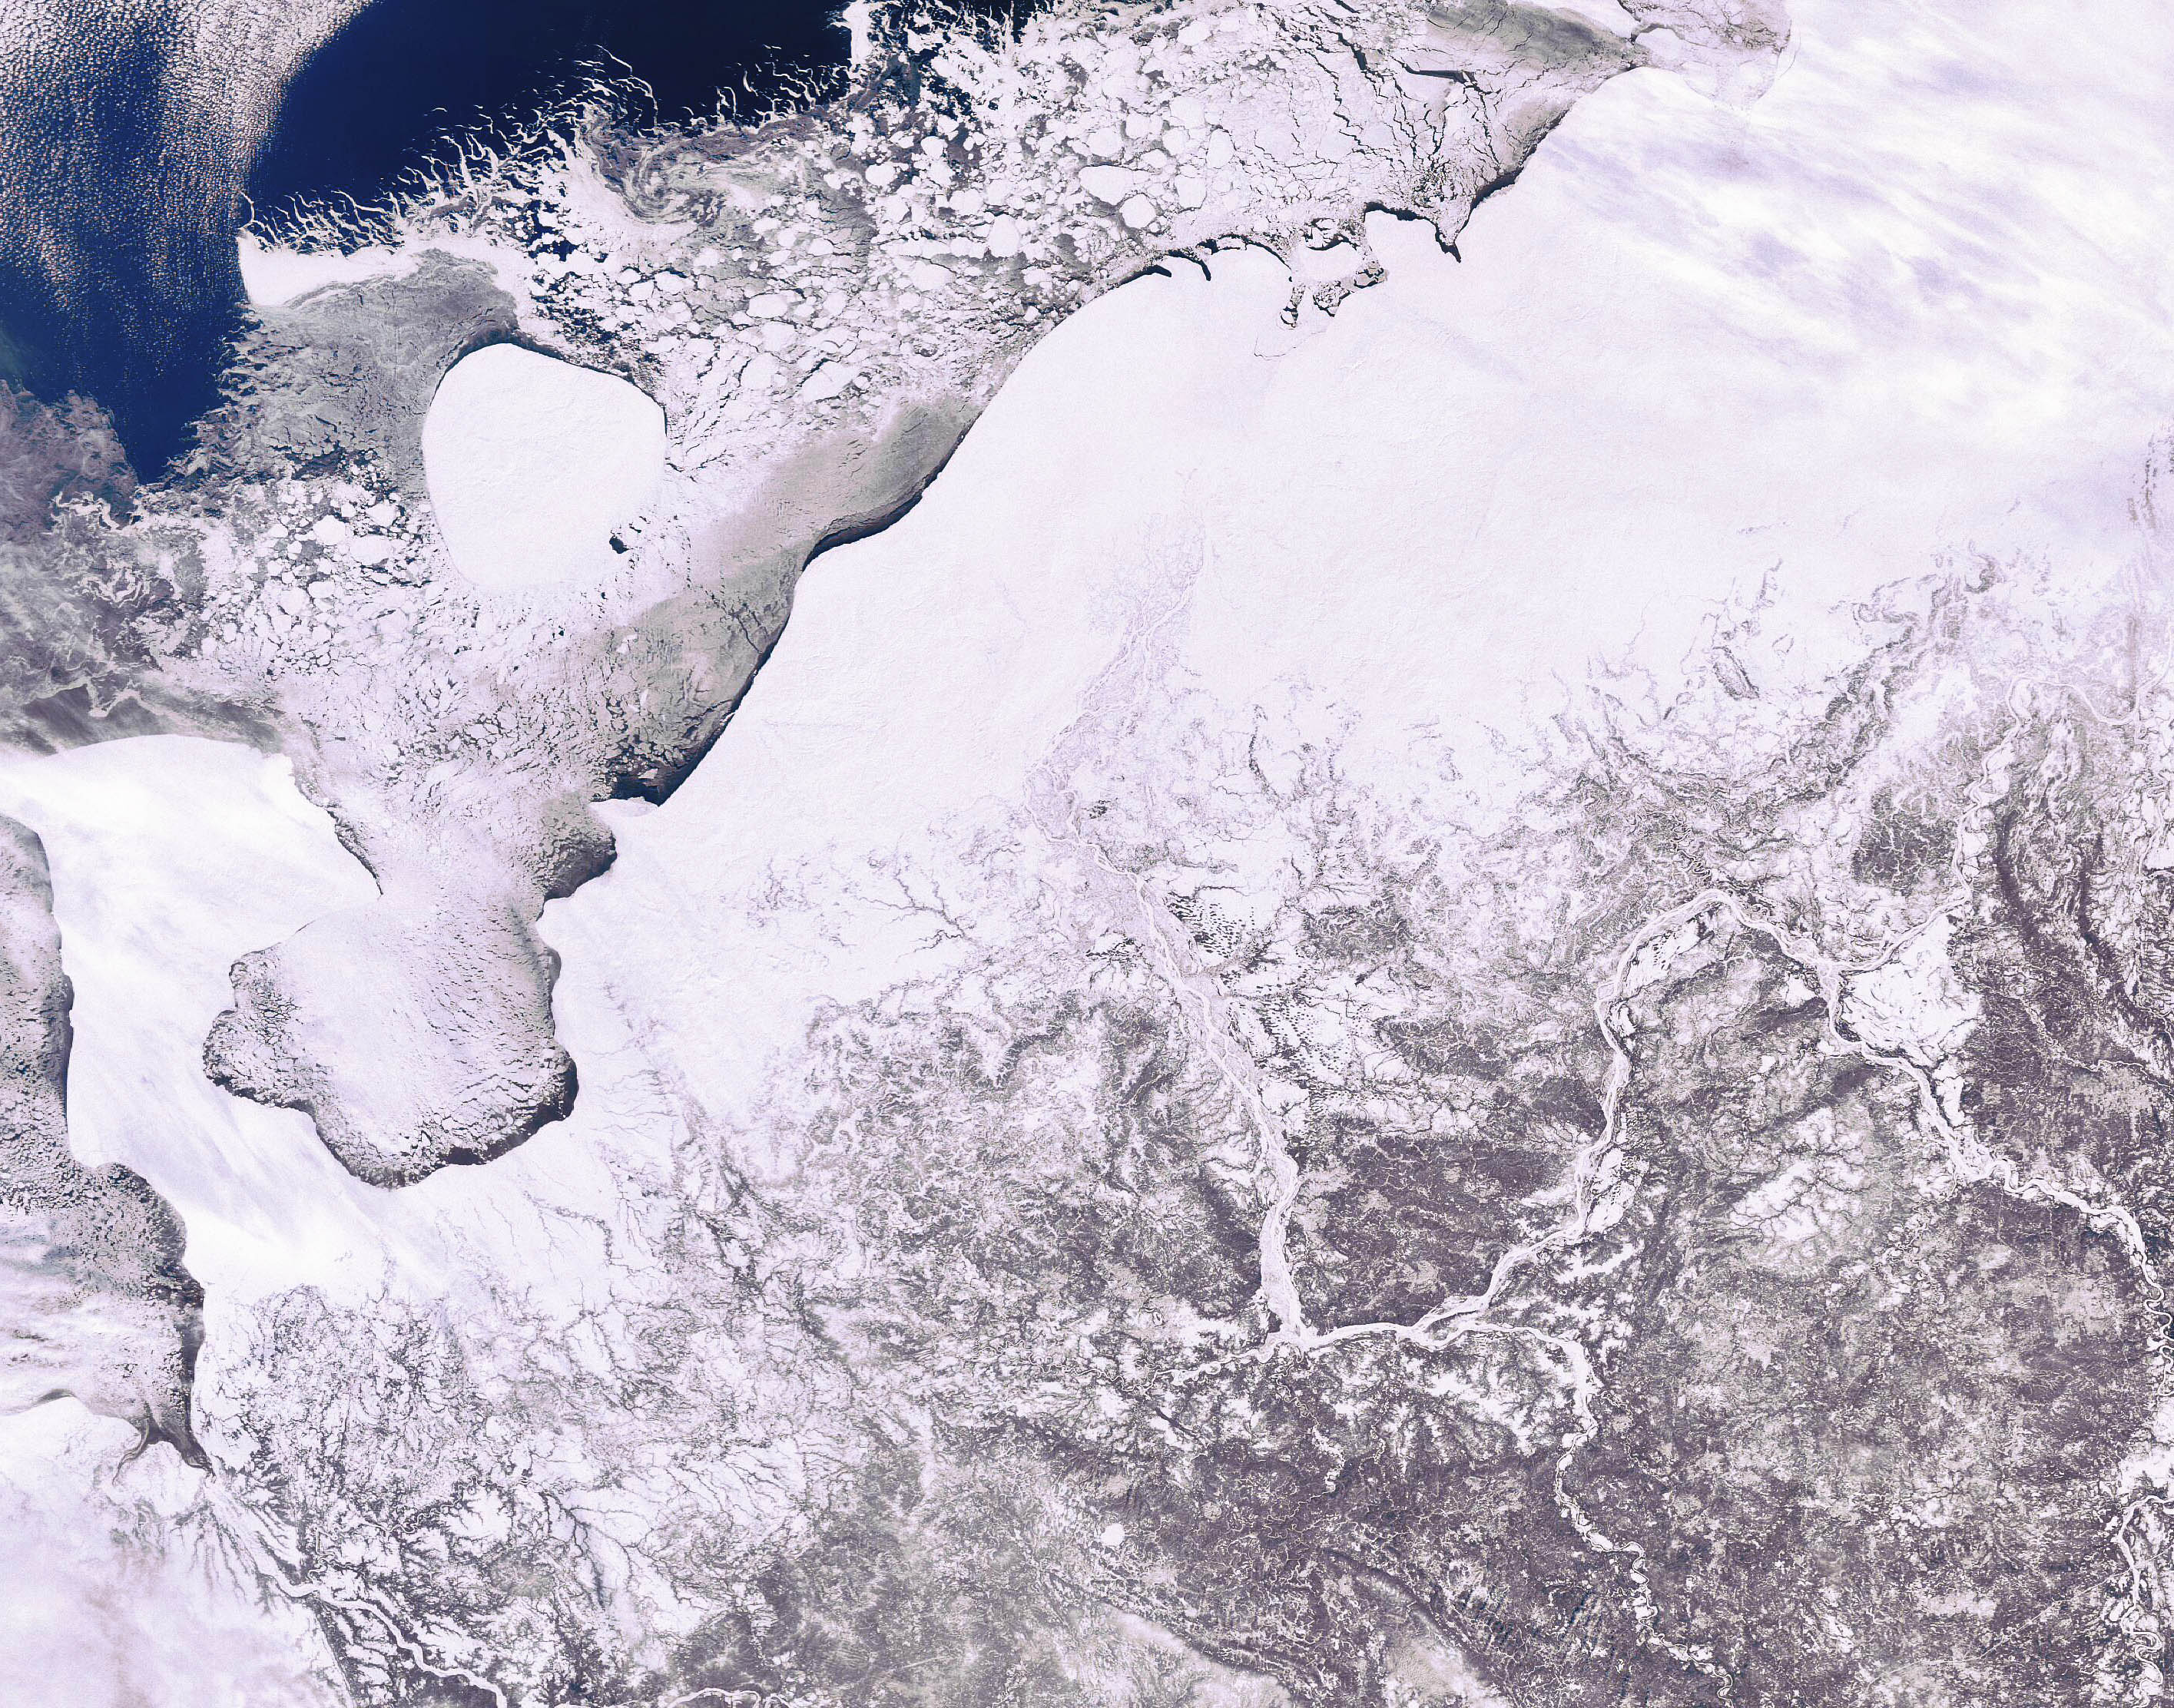 Снимки со спутника зимой